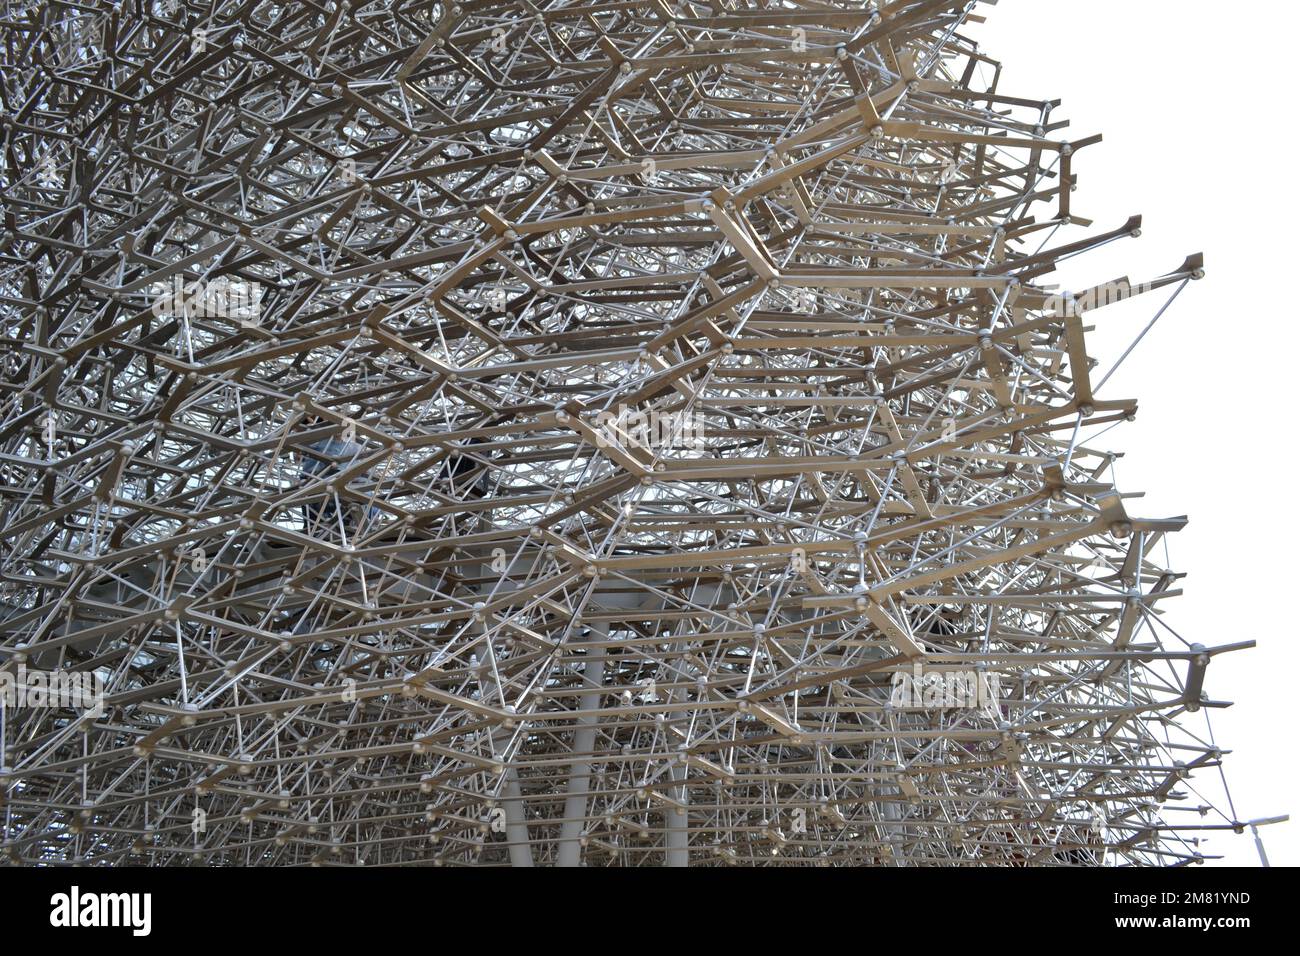 Modello in alluminio dell'alveare del padiglione del Regno Unito all'Expo Milano 2015. Hive a 14m cubi con luce e suono per simulare l'attività di un vero alveare. Foto Stock